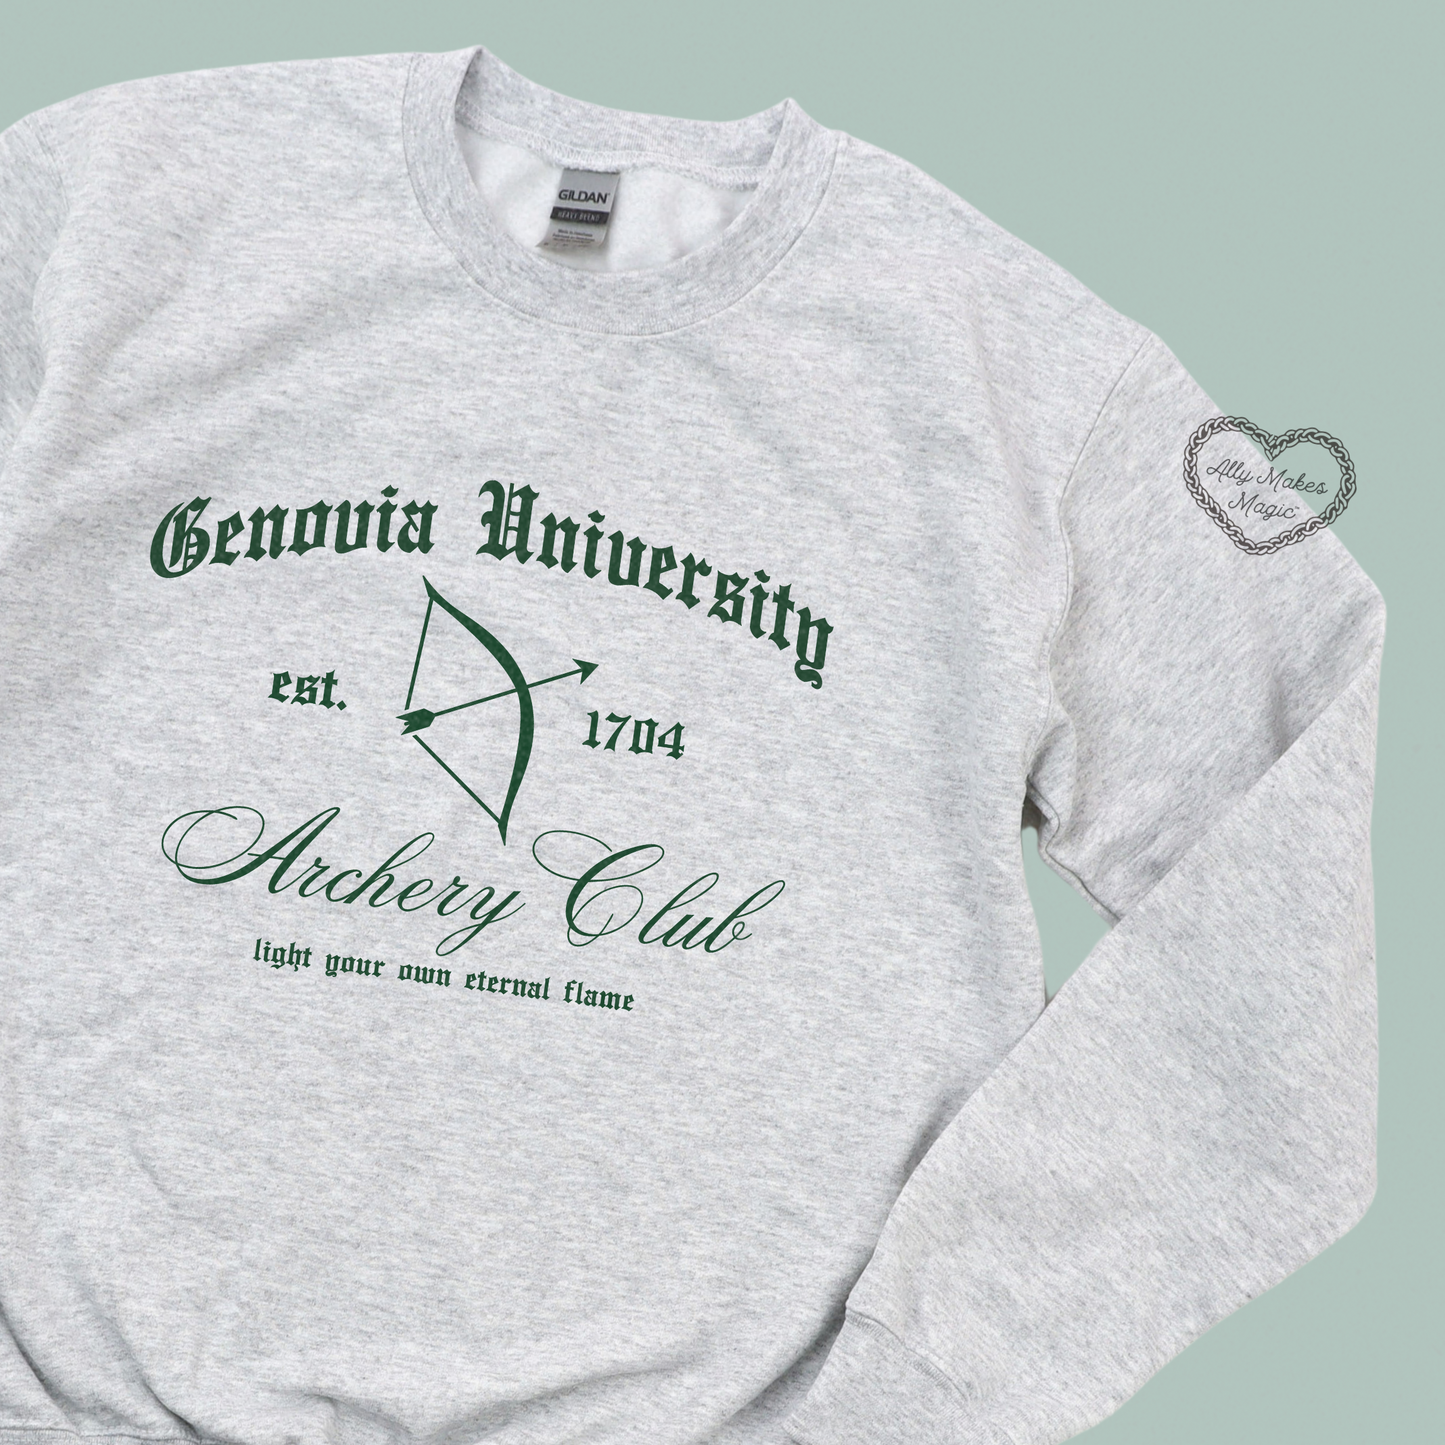 genovia archery club crew